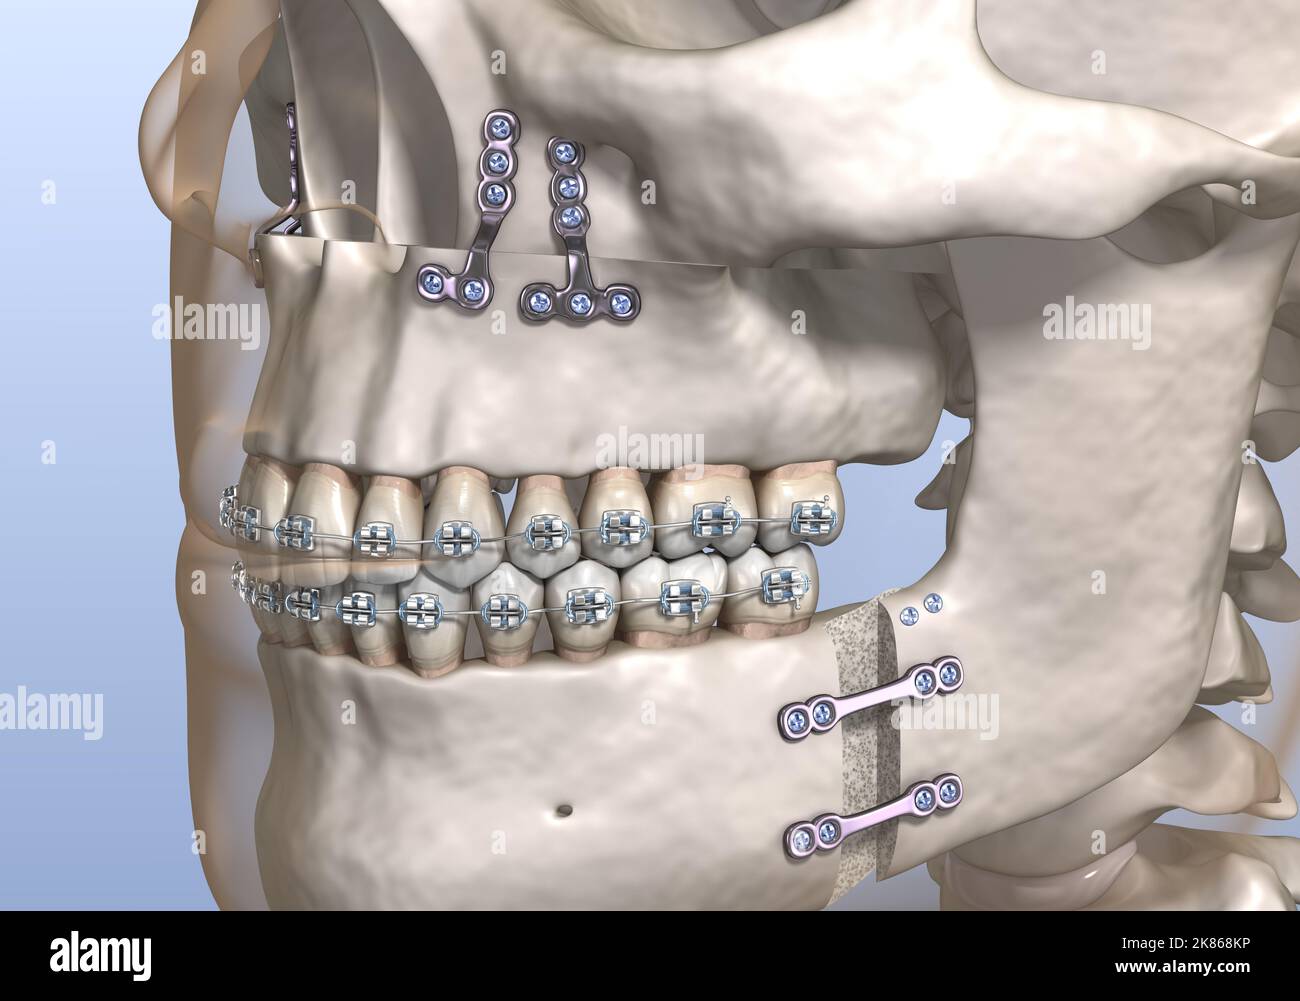 Cirugía de avance maxilomandibular. Ilustración 3D dental con precisión médica. Foto de stock